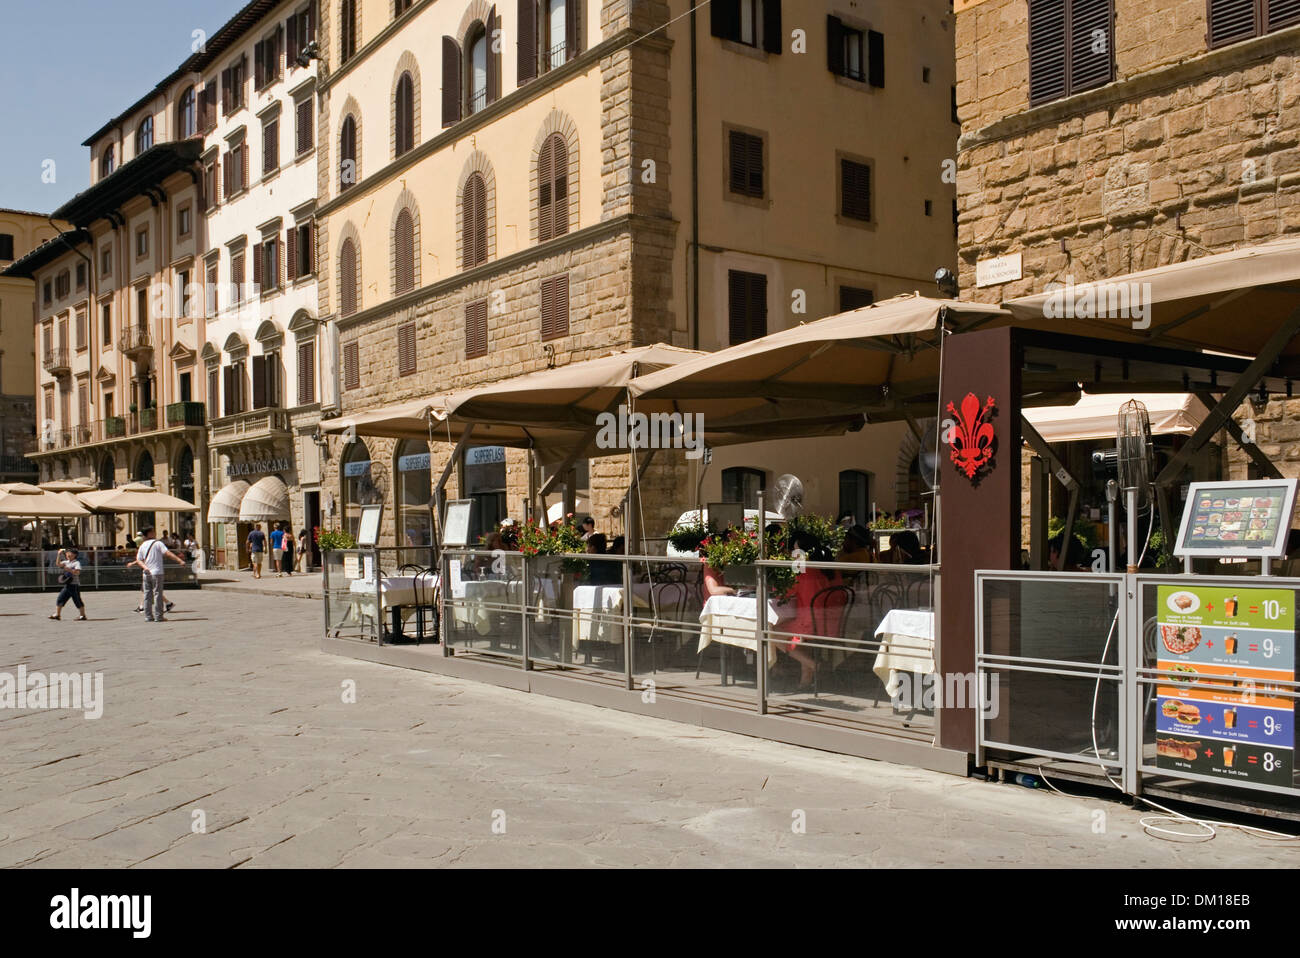 Restaurant in the Piazza della Signoria, Florence, Italy Stock Photo